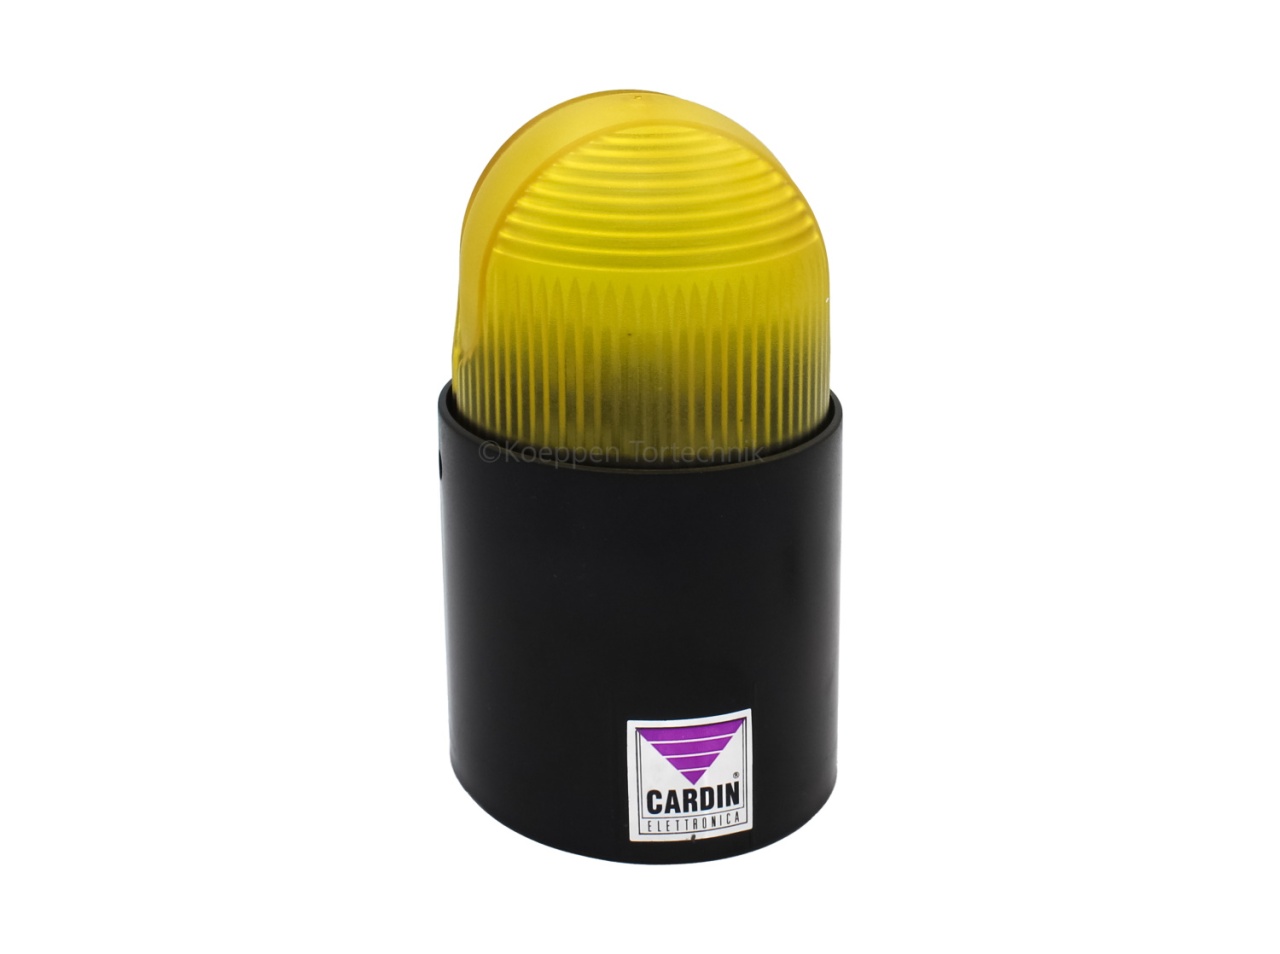 Blitzlampe BL80-24 V / gelb als Warnleuchte und Signallampe - Hörmann /  Novoferm Ersatzteile günstig für Tore und mehr